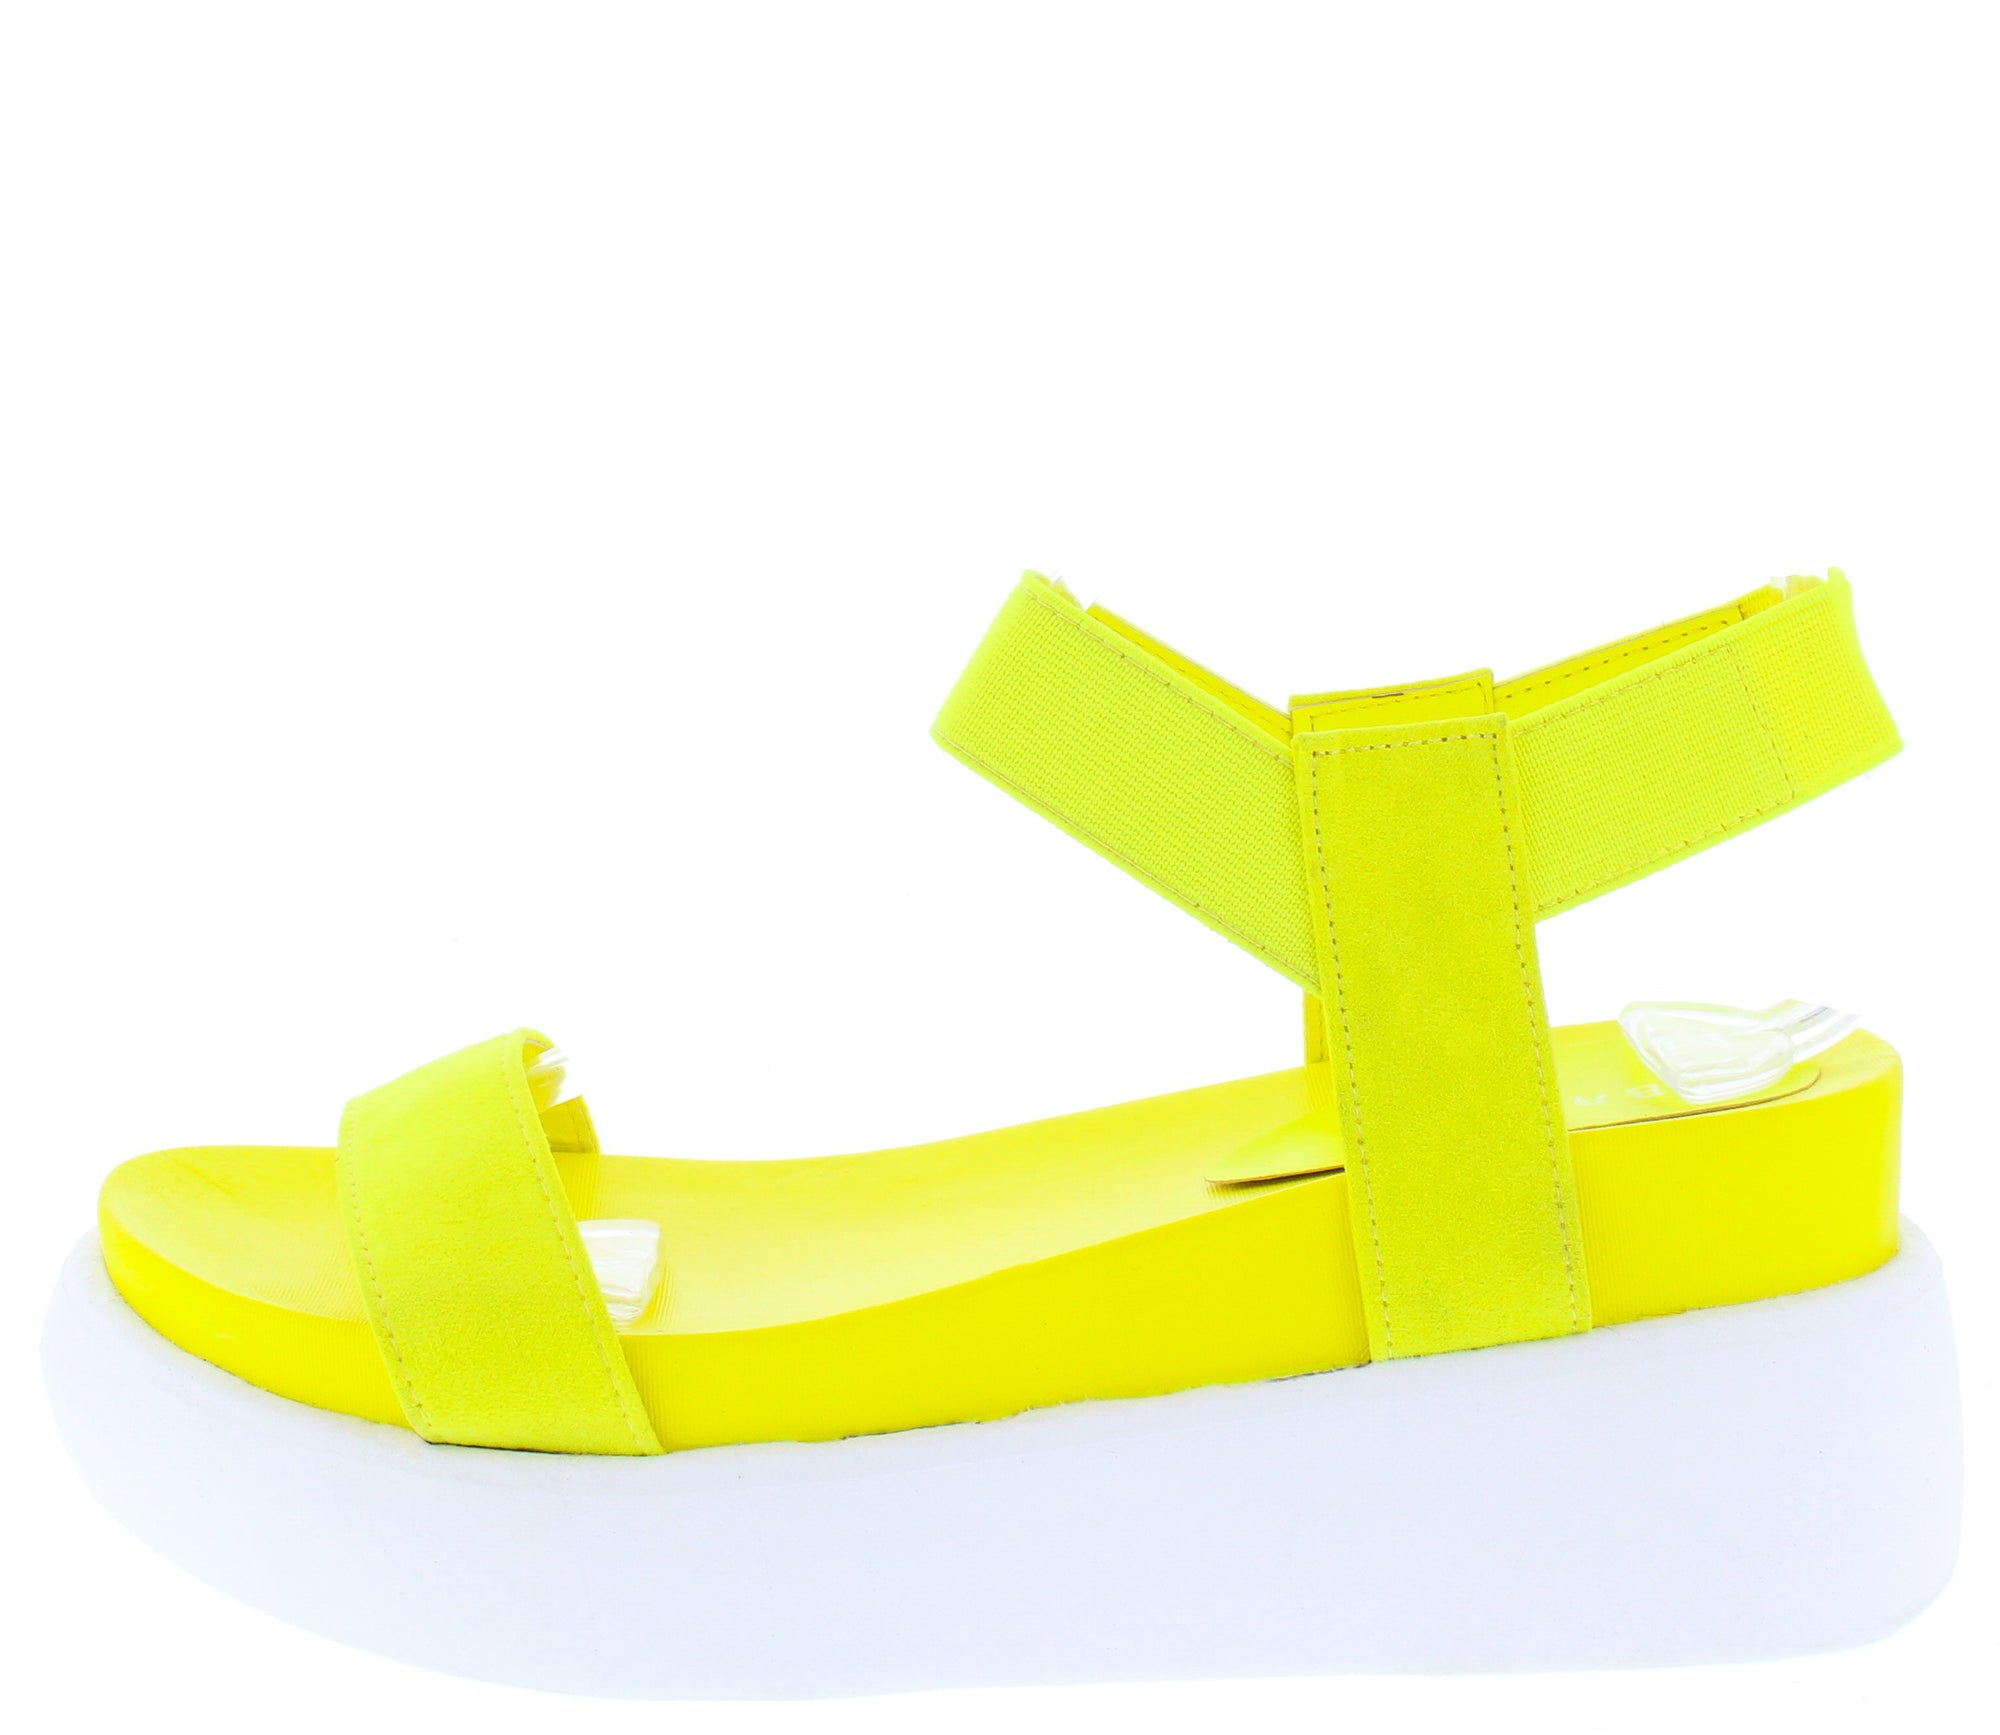 neon sandals wholesale